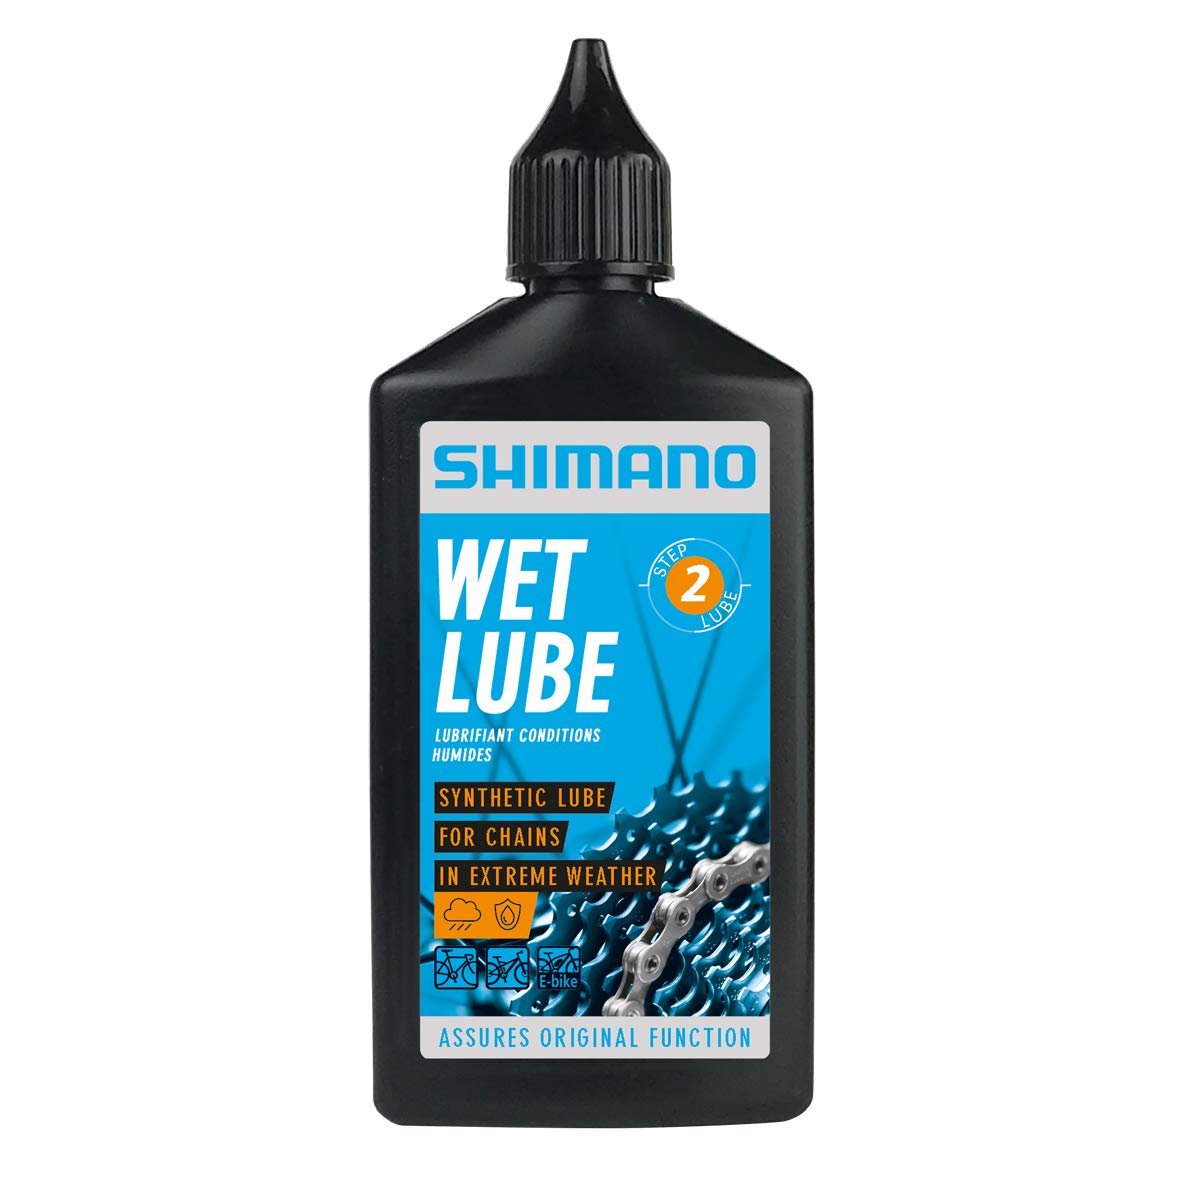 Смазка Shimano Wet Lube, для цепи, для влажной погоды, флакон, 100 мл, LBWL1B0100SA инструмент для нанесения смазки shimano для тюбика с резьбовой крышкой lbgg1es